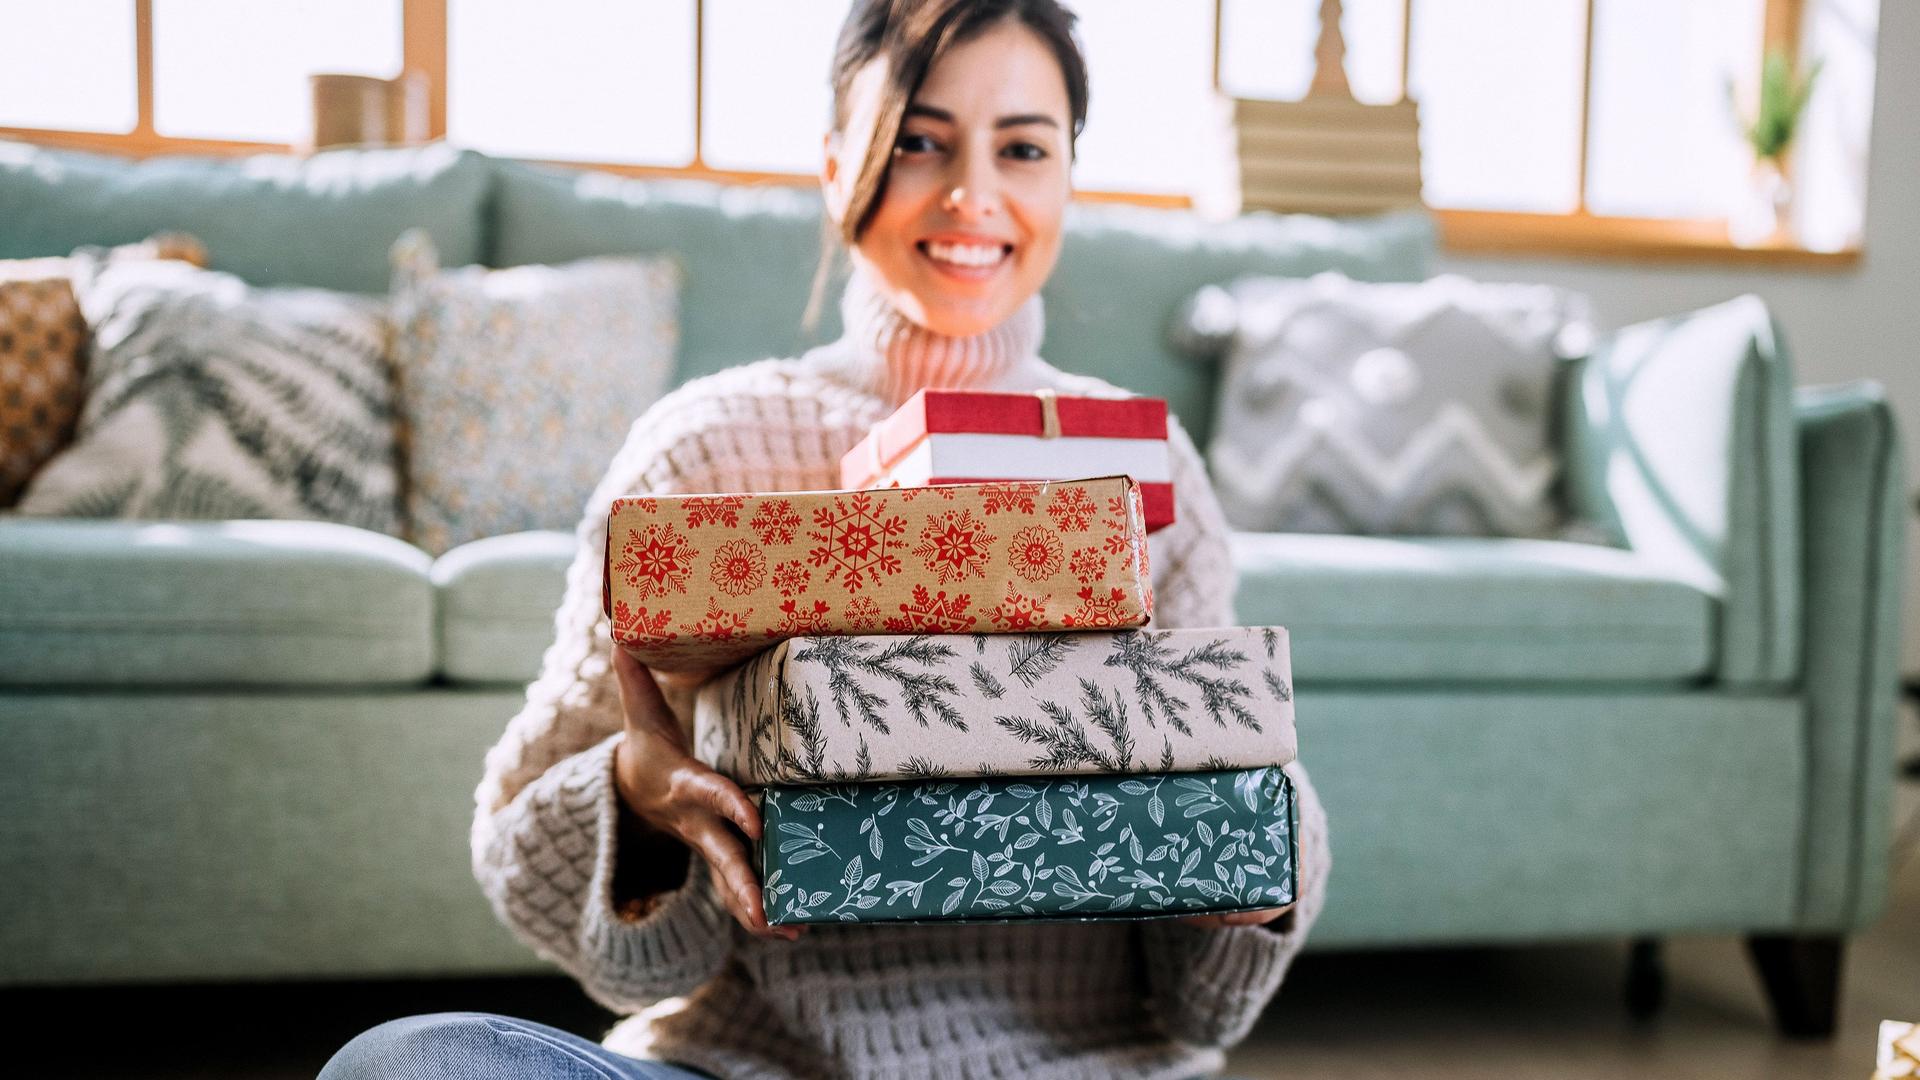 Porträt einer jungen Frau, die Weihnachtsgeschenke präsentiert während sie im Wohnzimmer vor der Couch auf den Boden sitzt